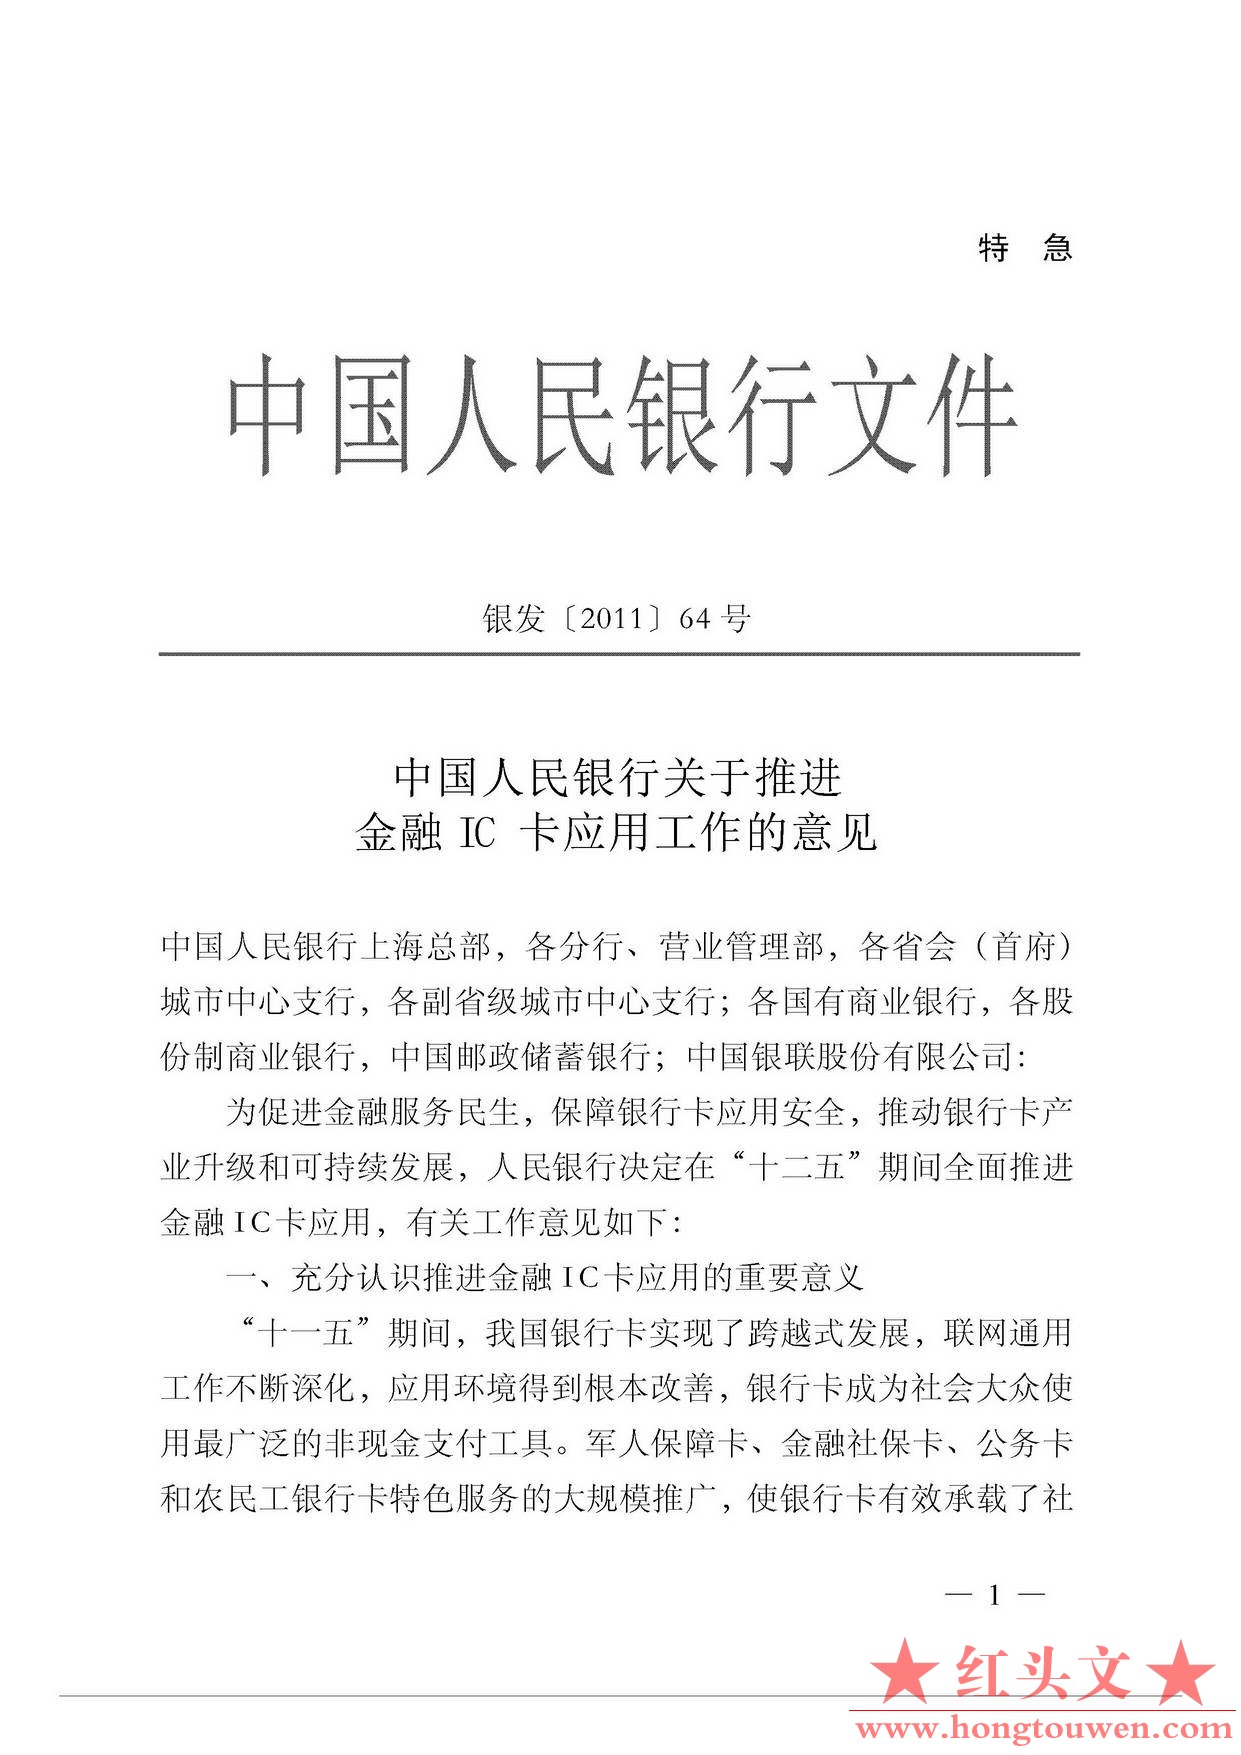 银发[2011]64号-中国人民银行关于推进金融IC卡应用工作的意见_页面_1.jpg.jpg